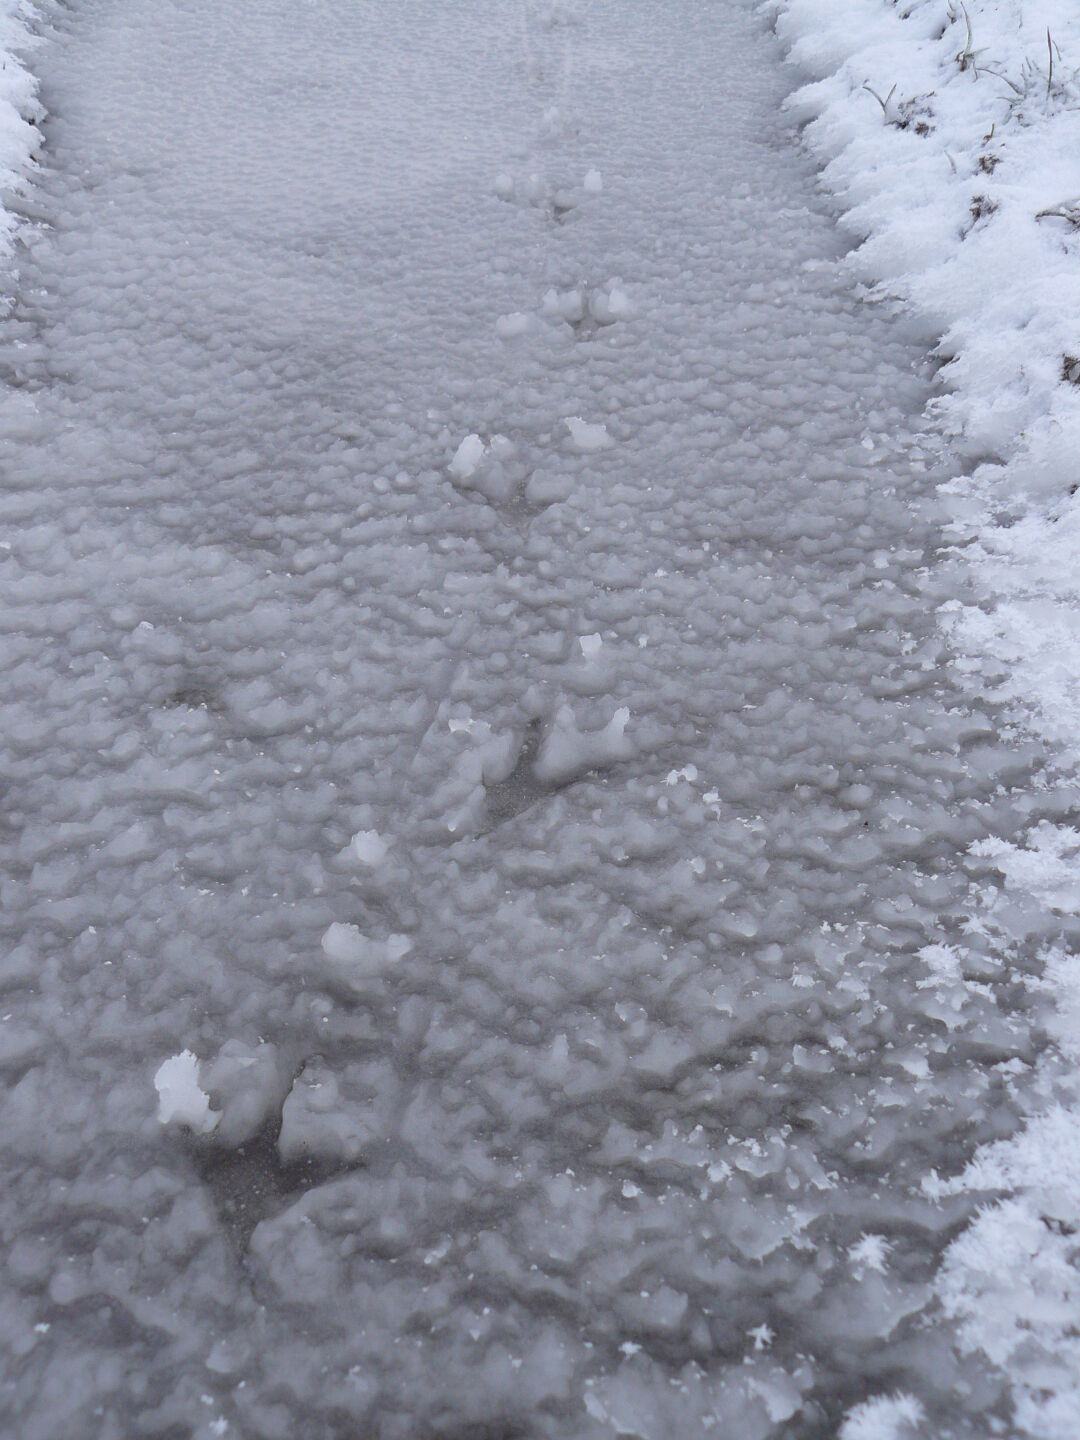 Bird&rsquo;s tracks frozen in snow.